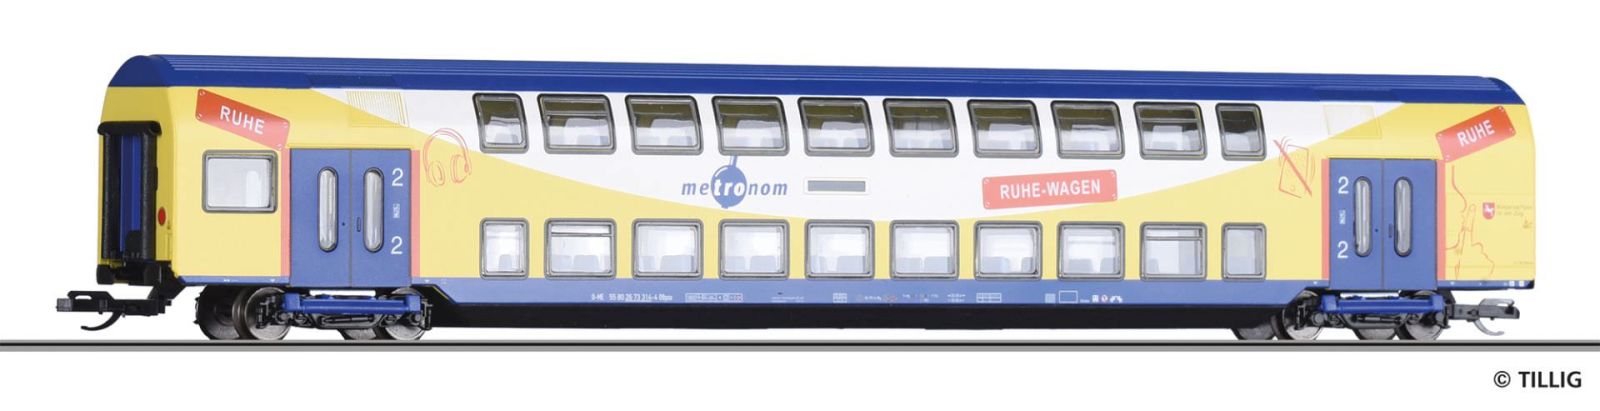 Double-deck coach metronom Eisenbahngesellschaft mbH